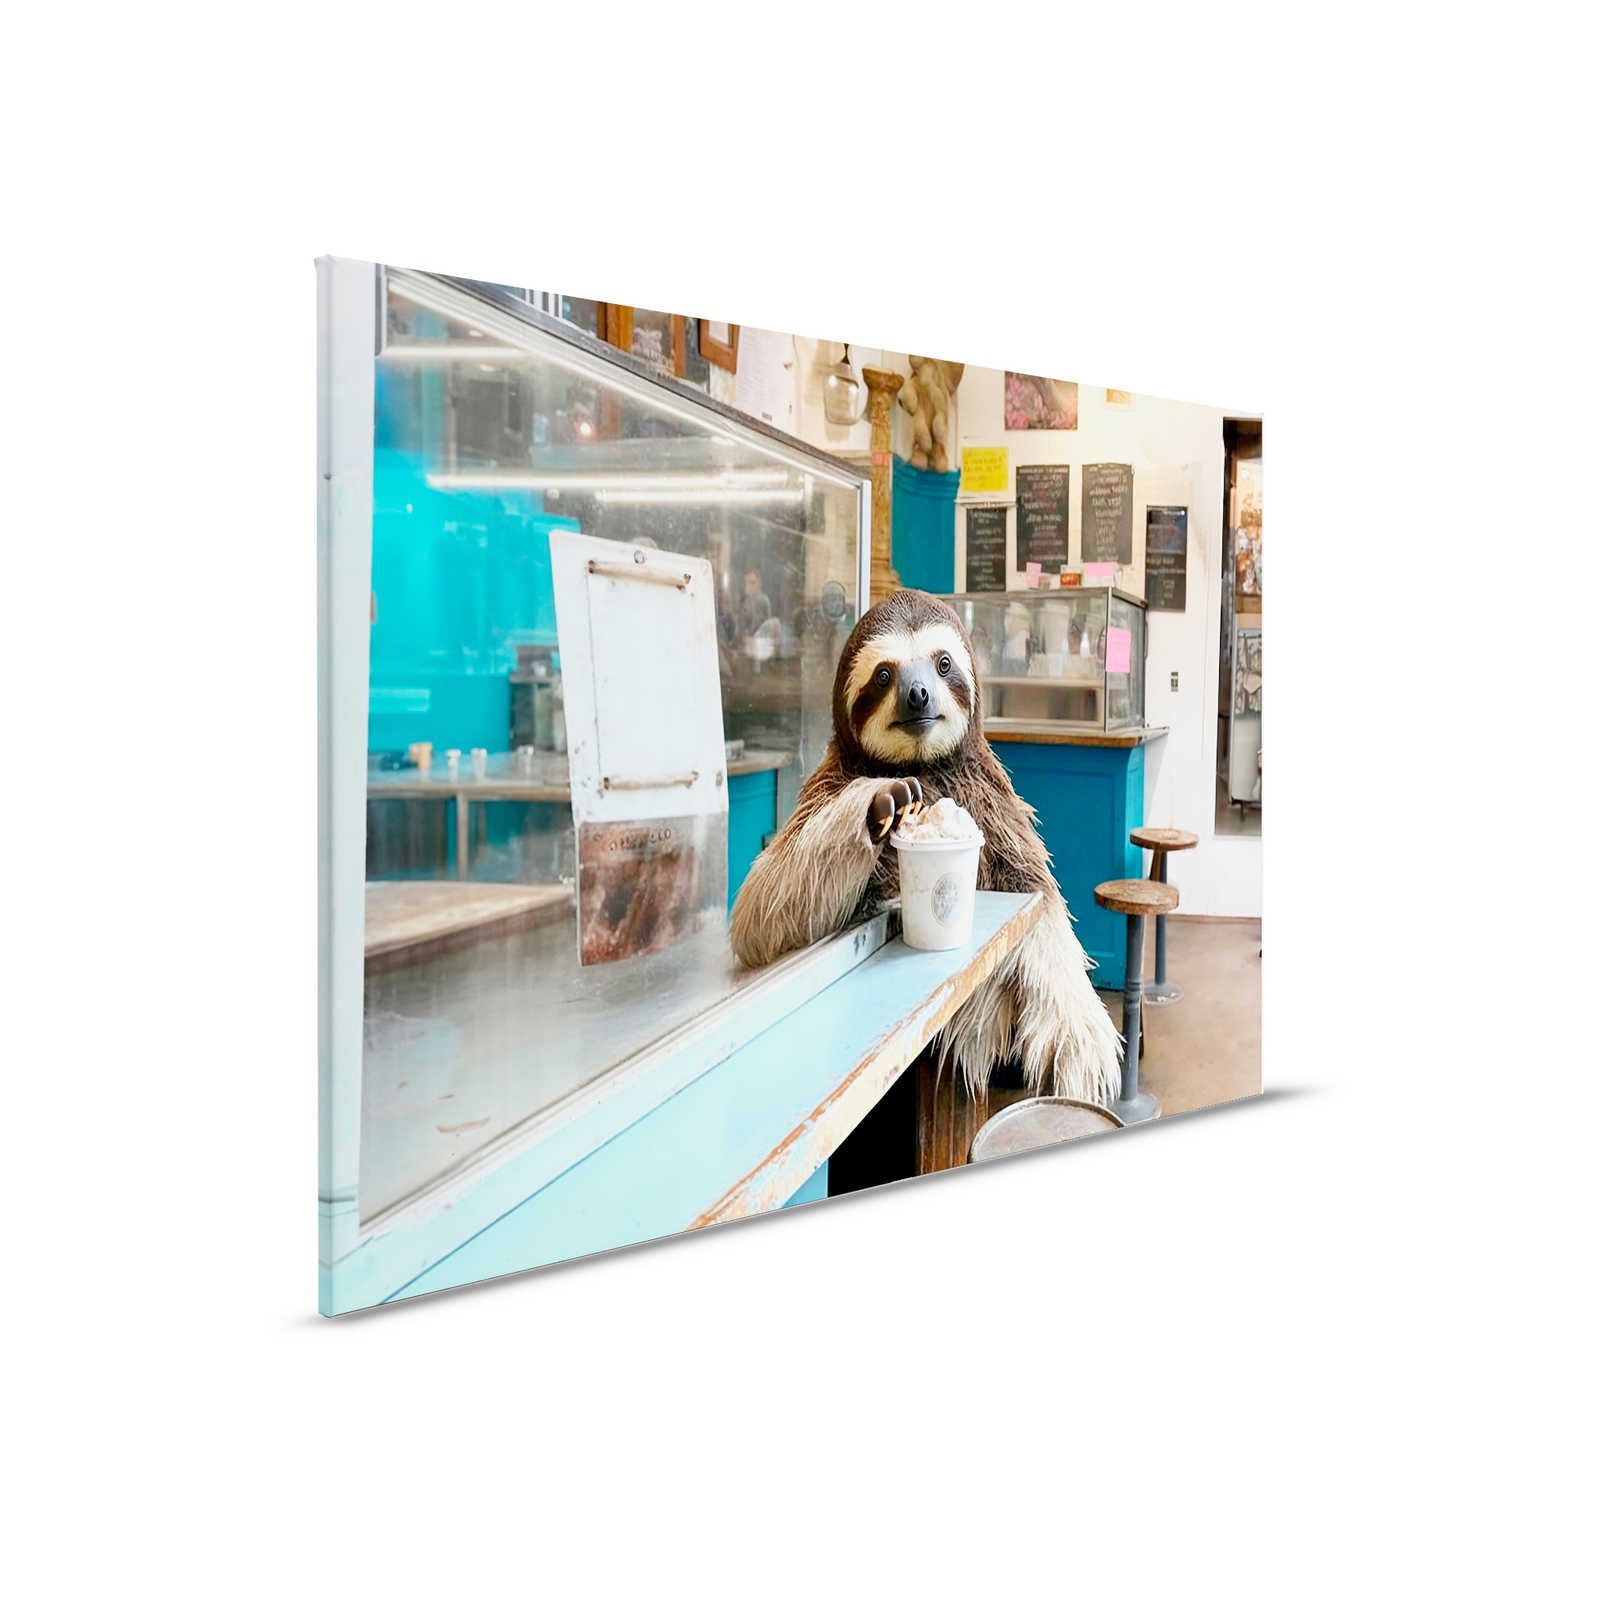 Toile KI »icy sloth« - 90 cm x 60 cm
